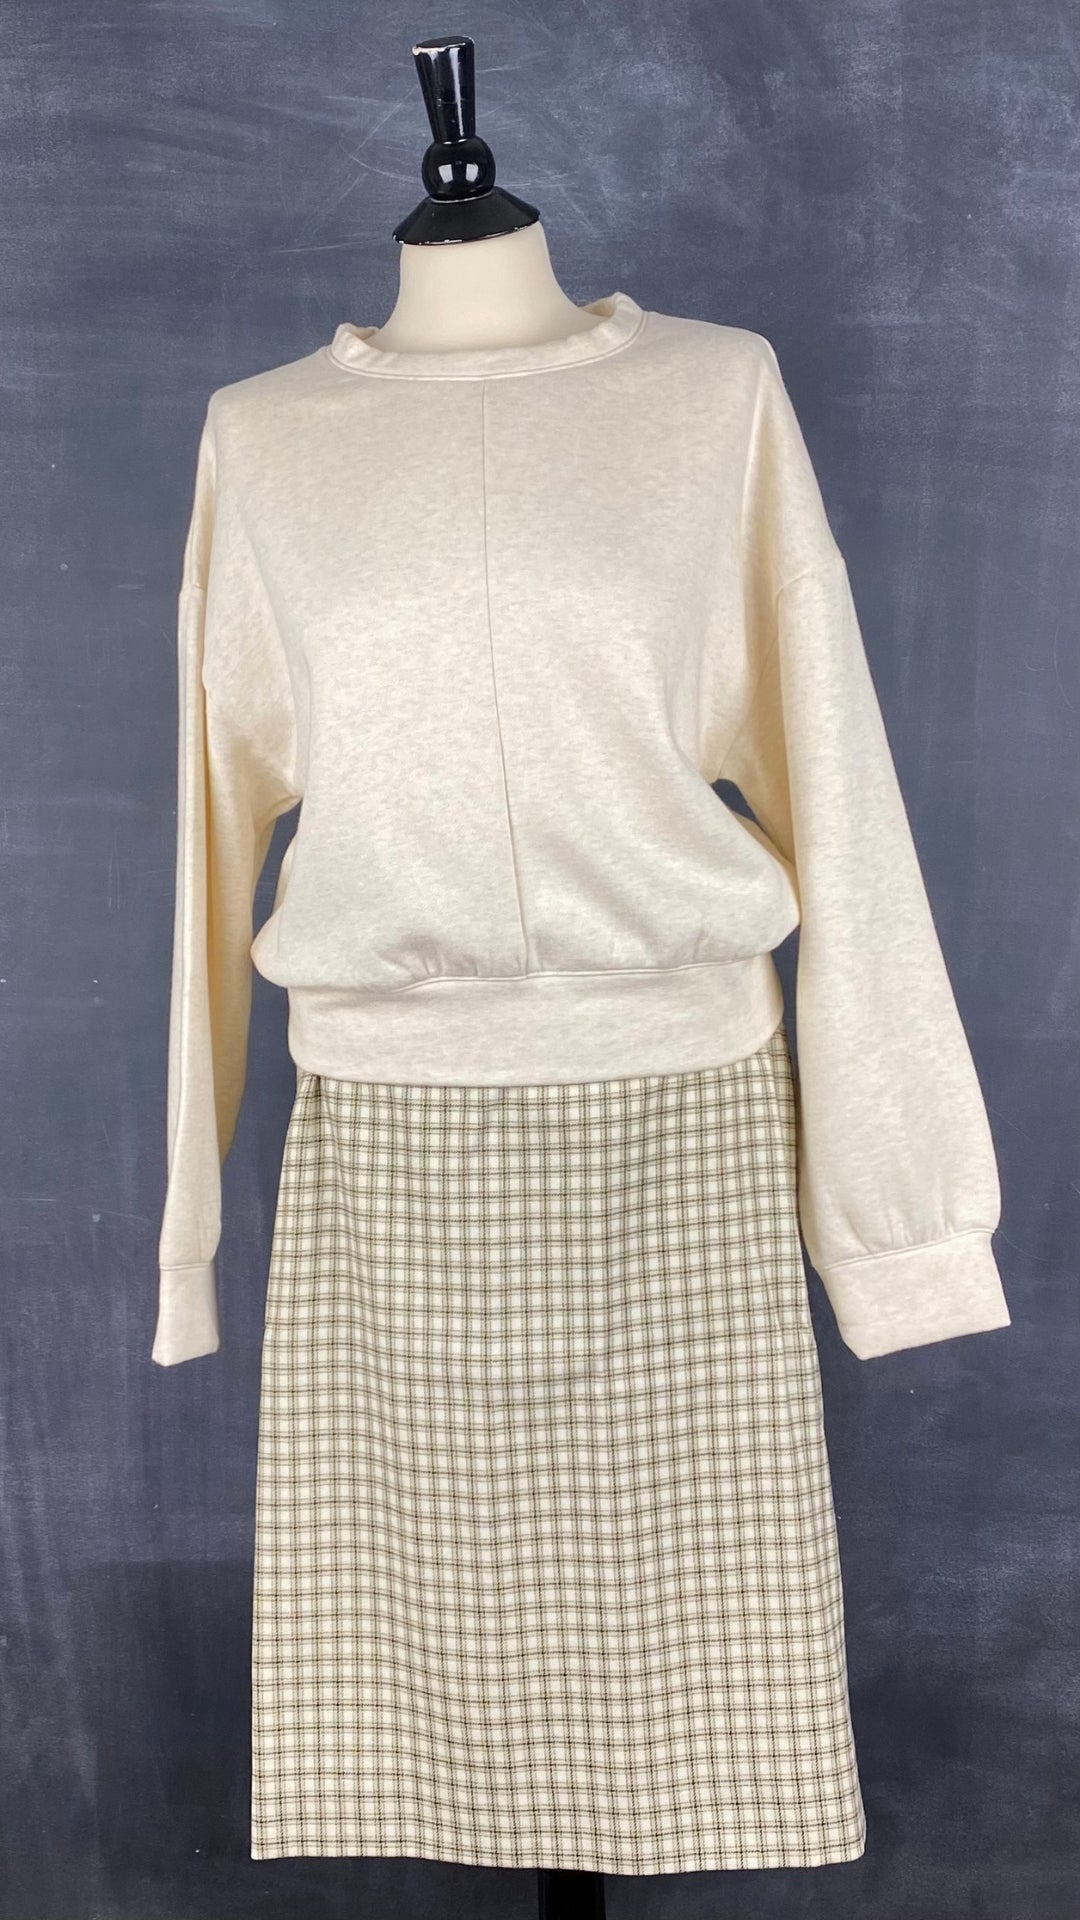 Chandail ouaté col rond confort suprême, Sève&Co., plusieurs tailles disponibles, 2 couleurs. Vue de l'agencement avec une jupe en lainage Lucia.